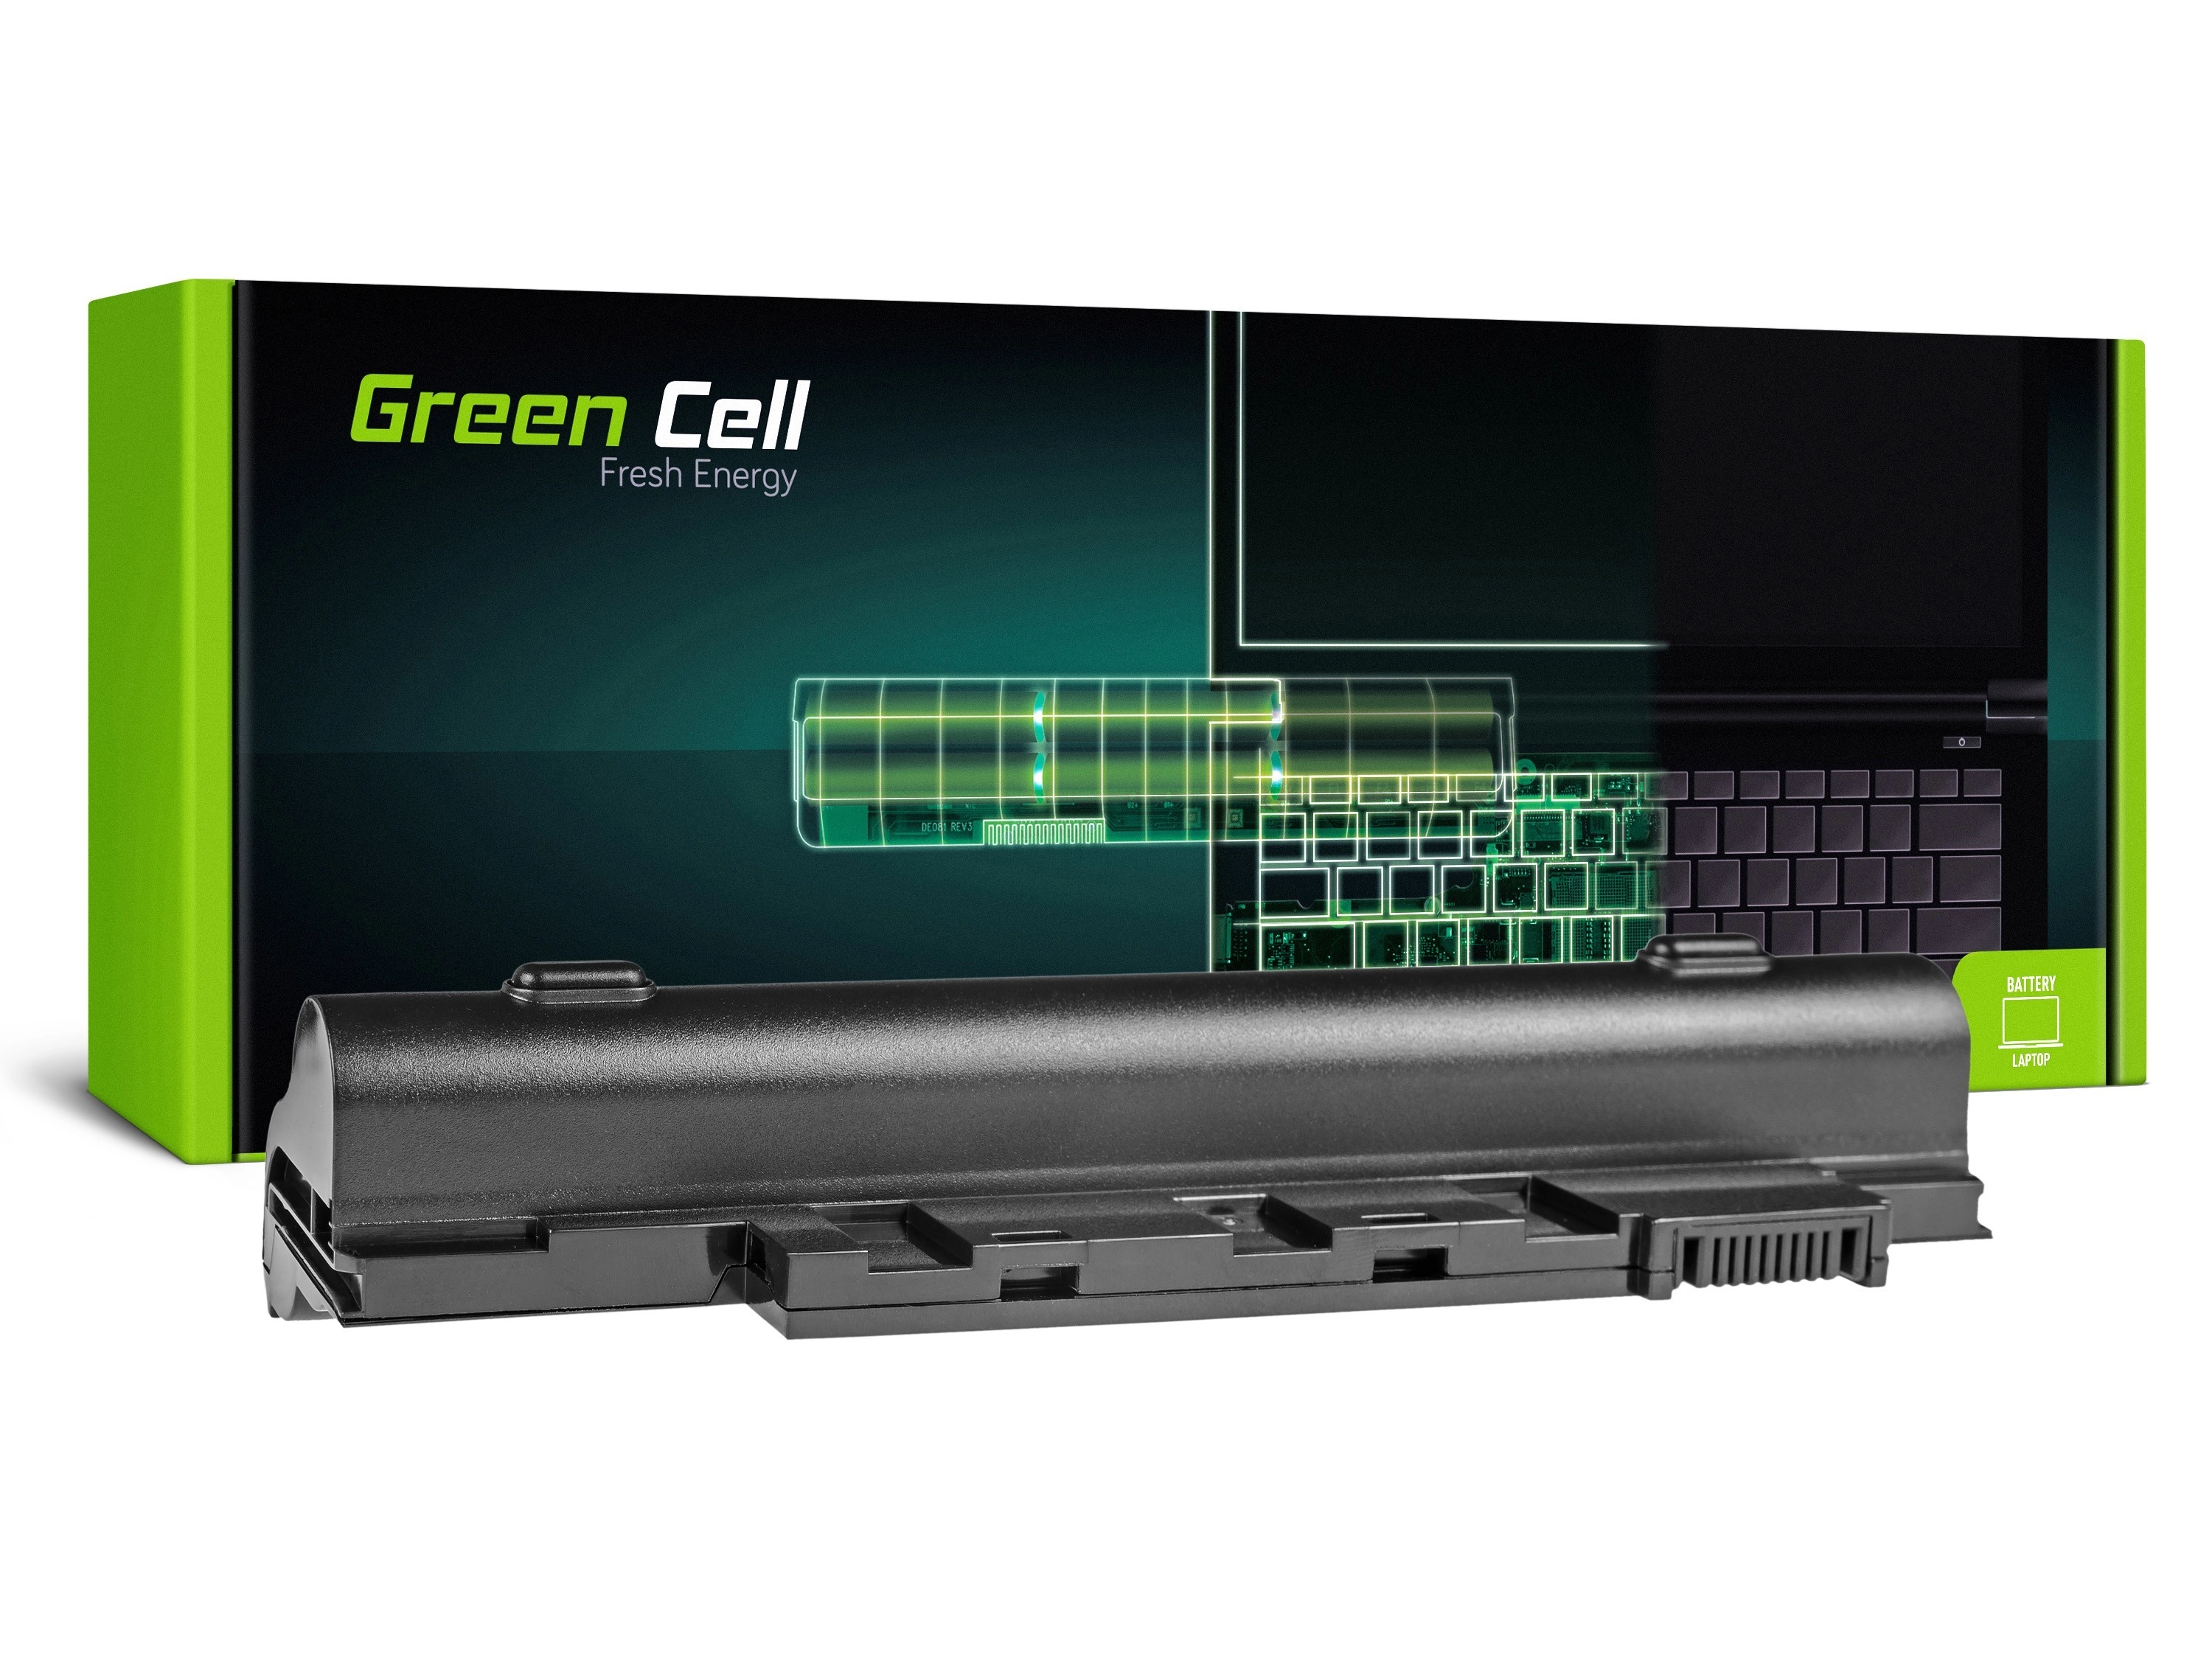 Green Cell Battery for Acer Aspire D255 D257 D260 D270 722 / 11,1V 4400mAh